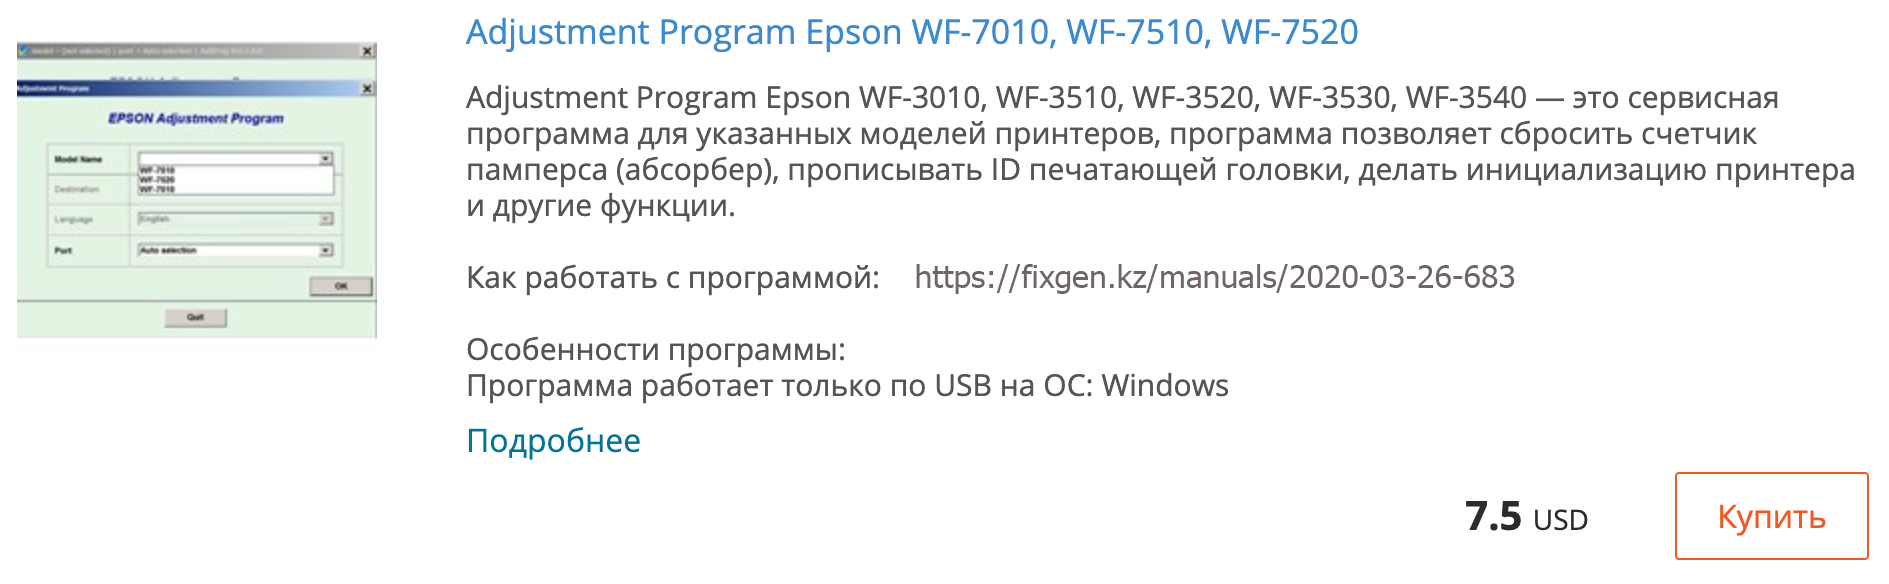 Купить Adjustment program Epson WF-7010, WF-7510, WF-7520